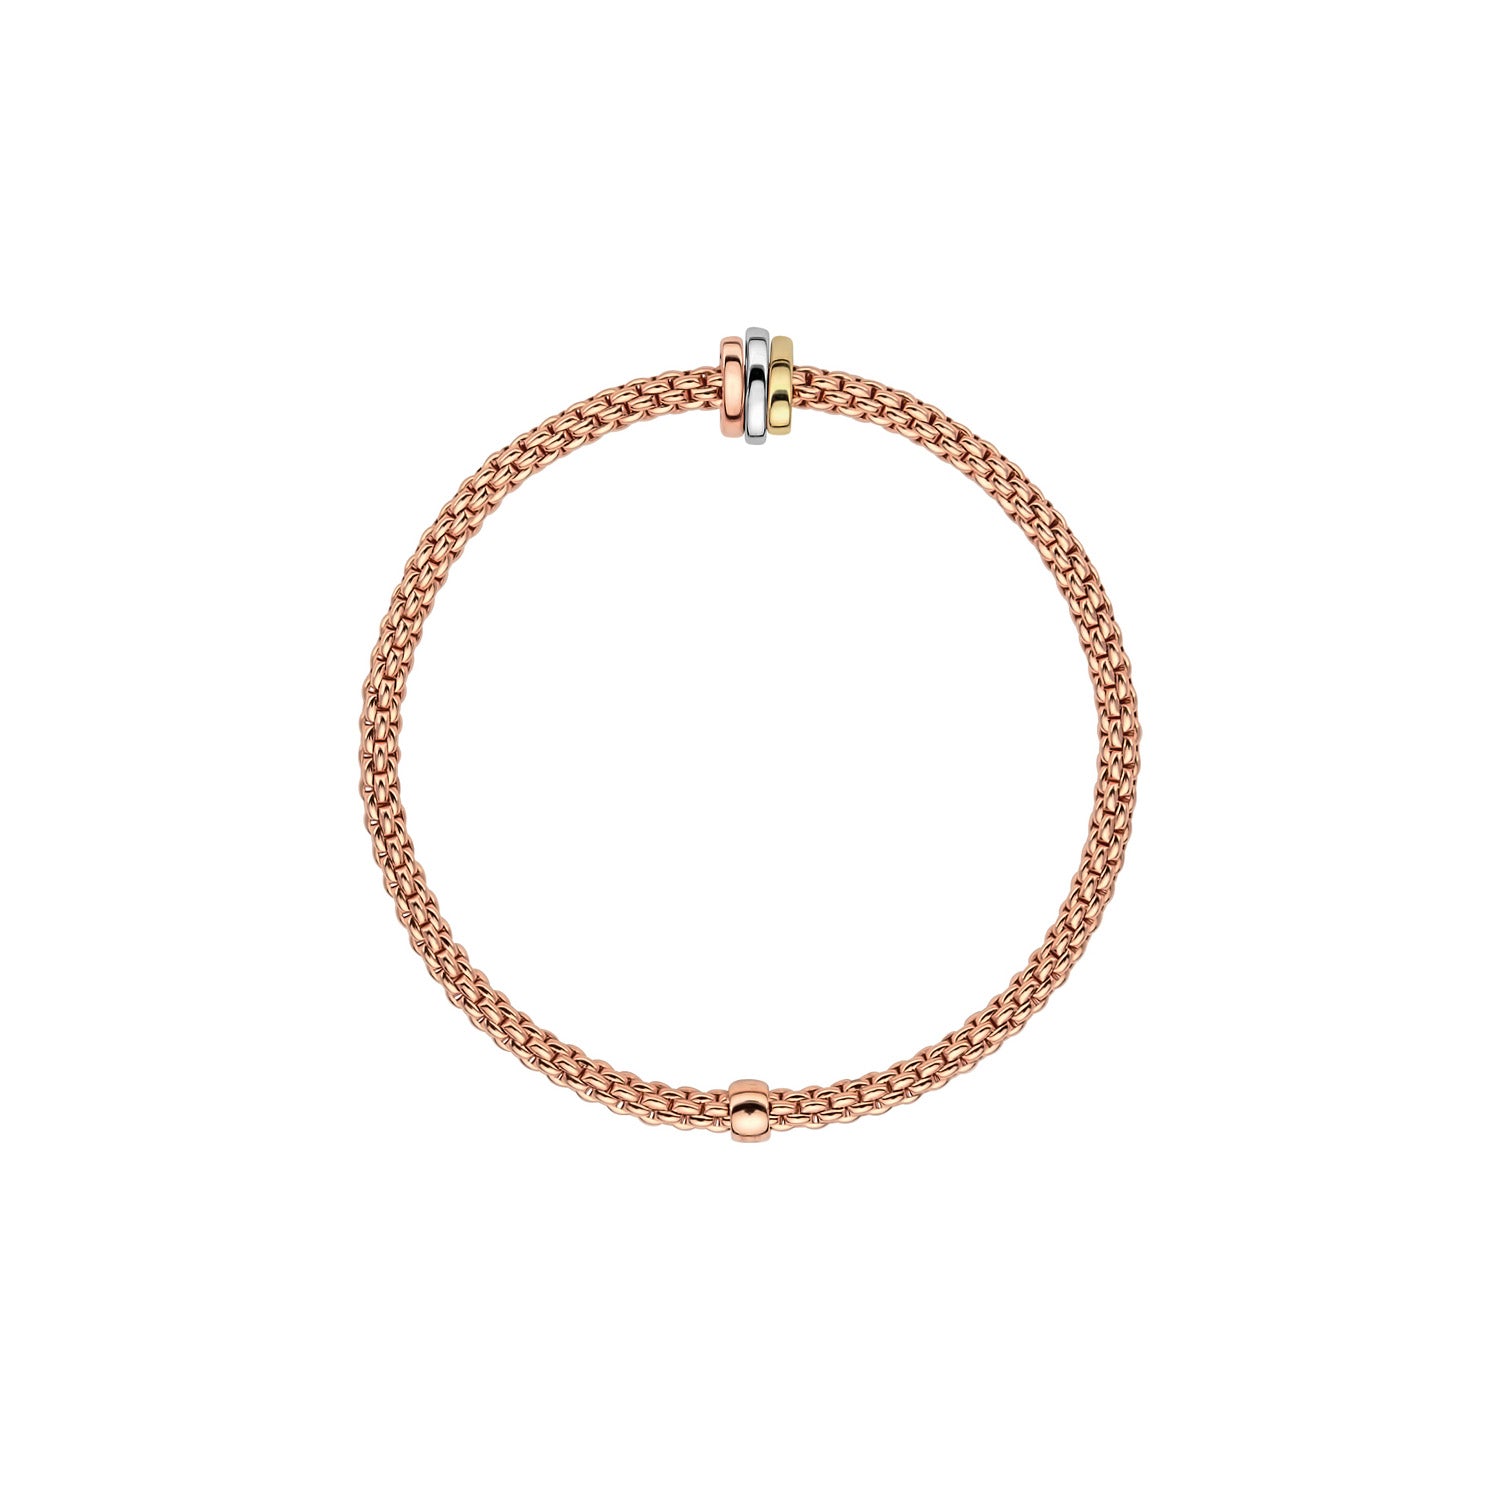 Flex'it Prima bracelet in rose gold